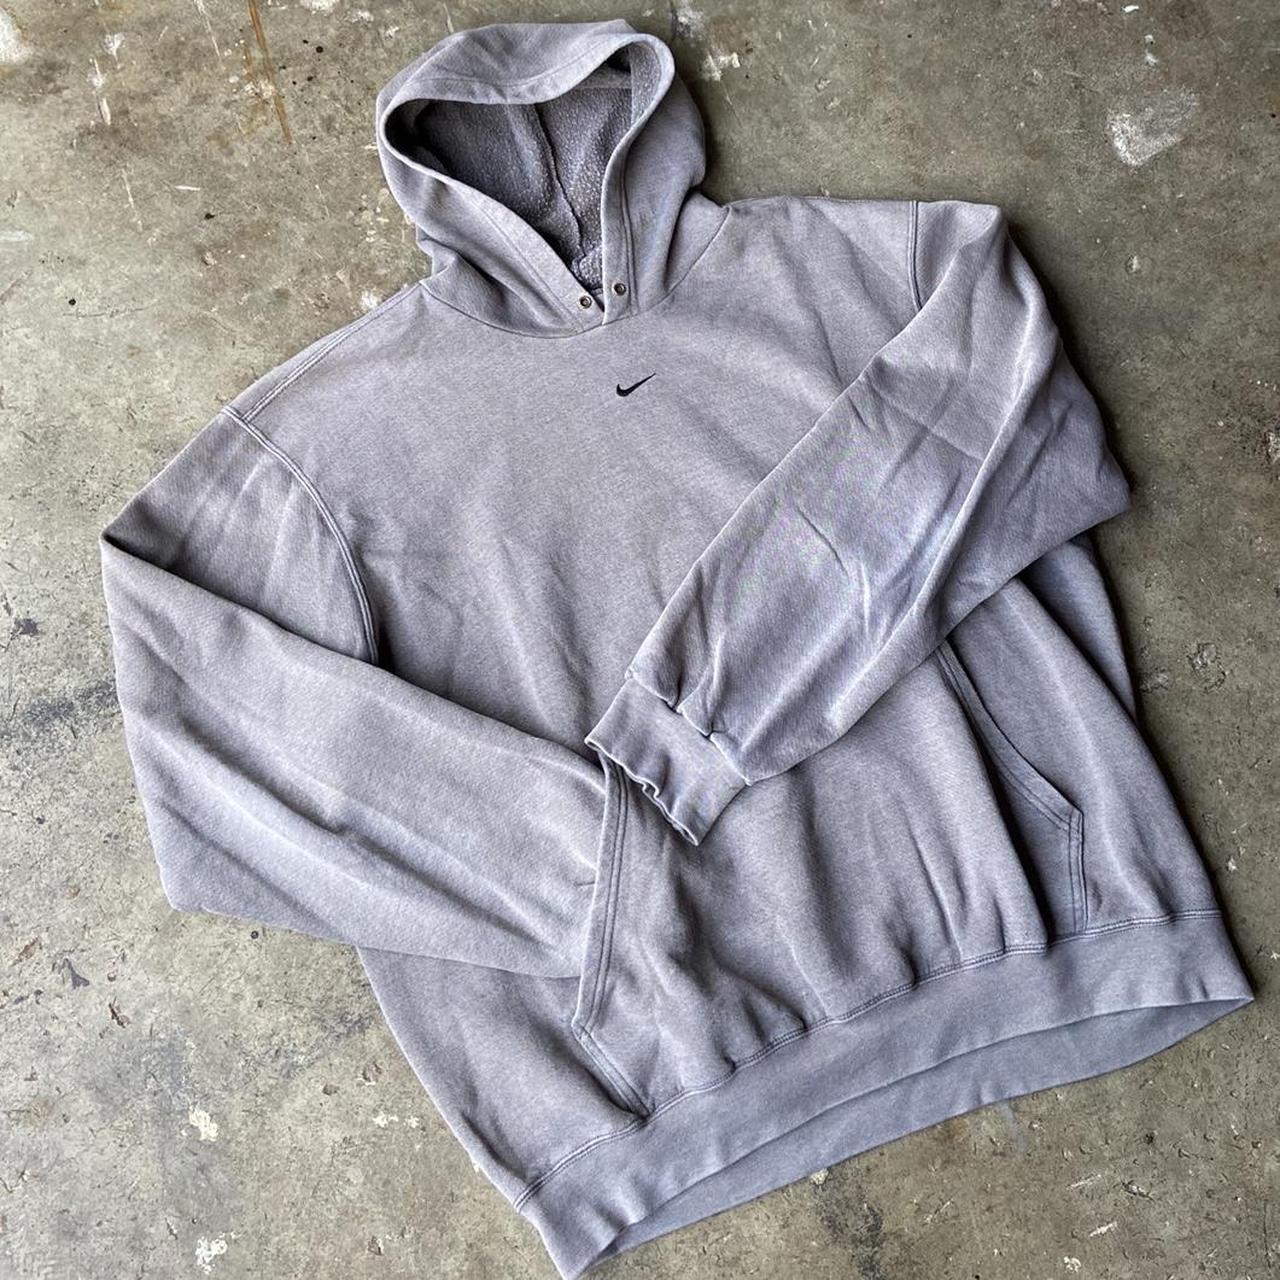 Vintage y2k grey Nike center swoosh hoodie! Size... - Depop